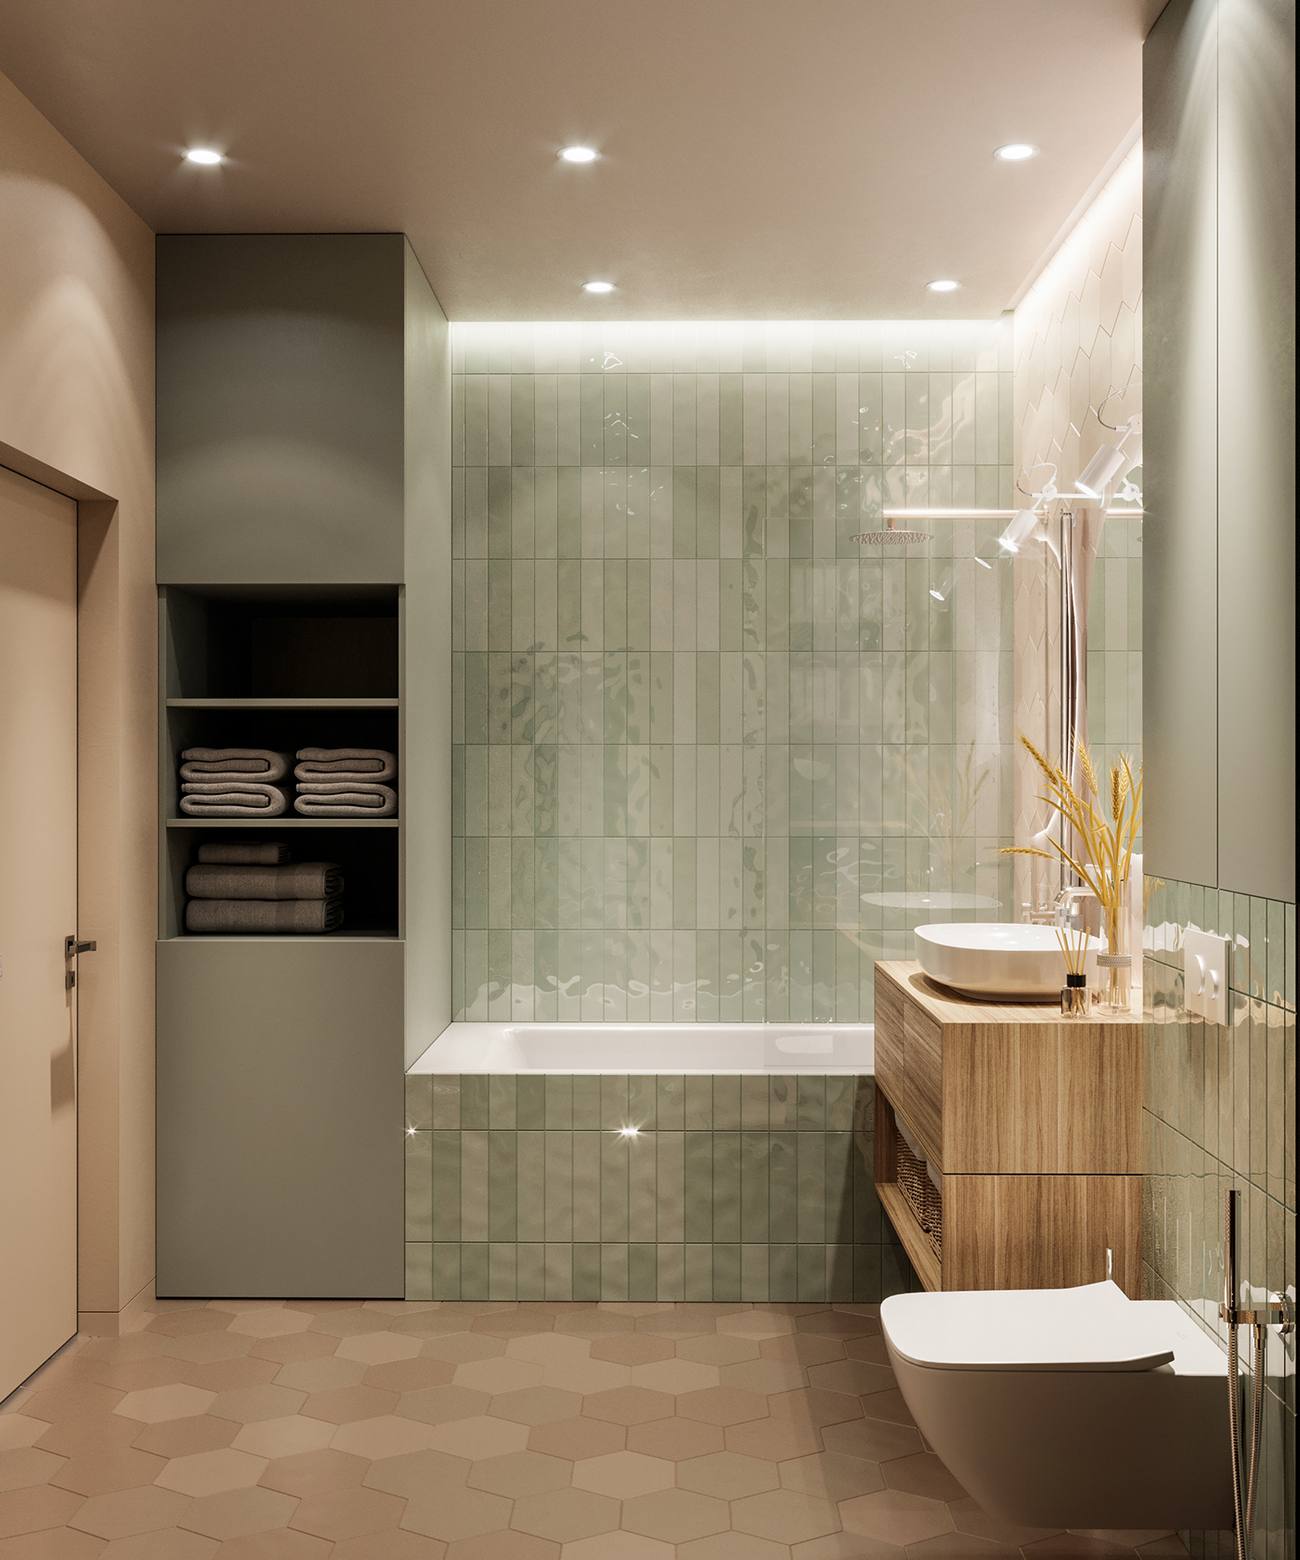 Bồn tắm nằm phân vùng với toilet bằng cửa kính trong suốt, kết hợp với ánh đèn trần và đèn gắn tường cho cảm giác tươi sáng và ấm áp lan tỏa không gian.